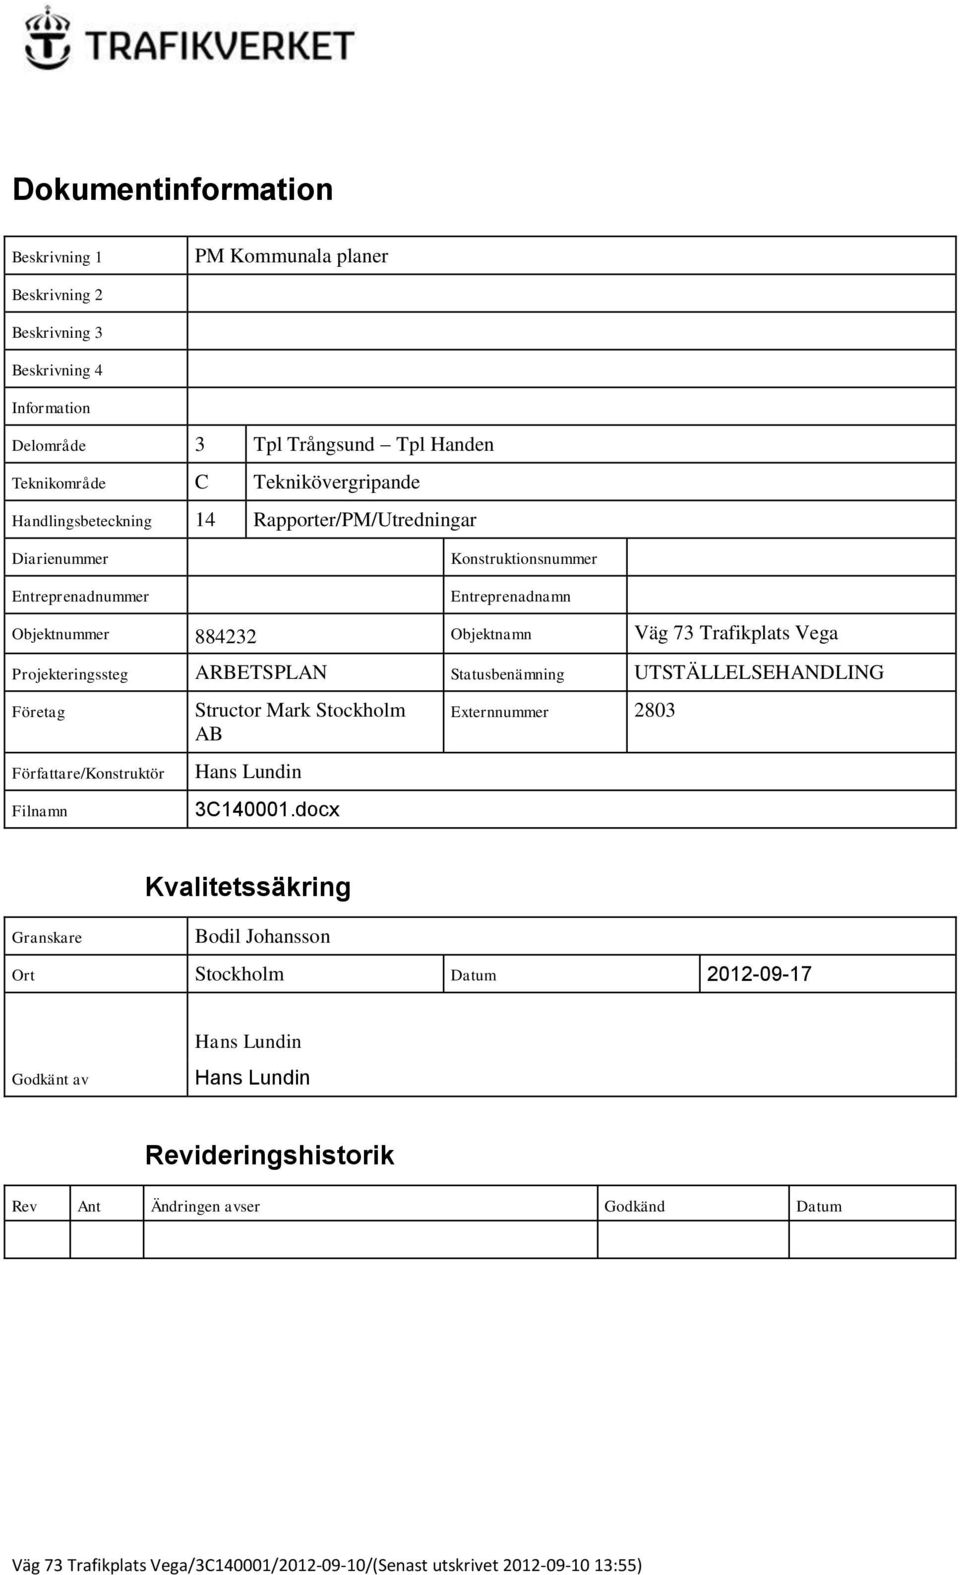 Vega Projekteringssteg ARBETSPLAN Statusbenämning UTSTÄLLELSEHANDLING Företag Författare/Konstruktör Filnamn Structor Mark Stockholm AB Hans Lundin 3C140001.